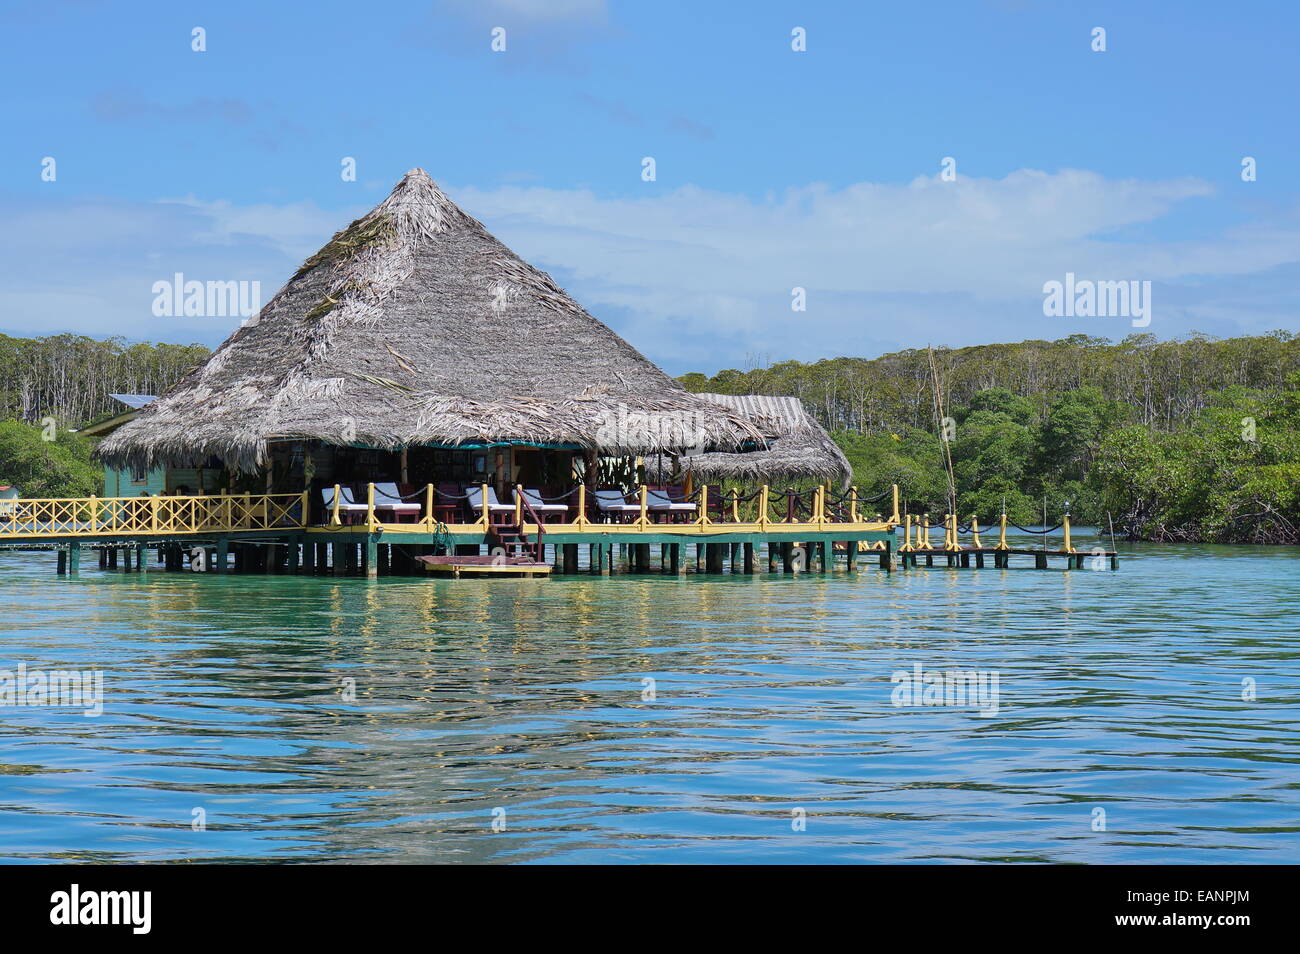 Le restaurant Tropical avec toit de chaume au-dessus de l'eau de la mer des Caraïbes, l'Amérique centrale Banque D'Images